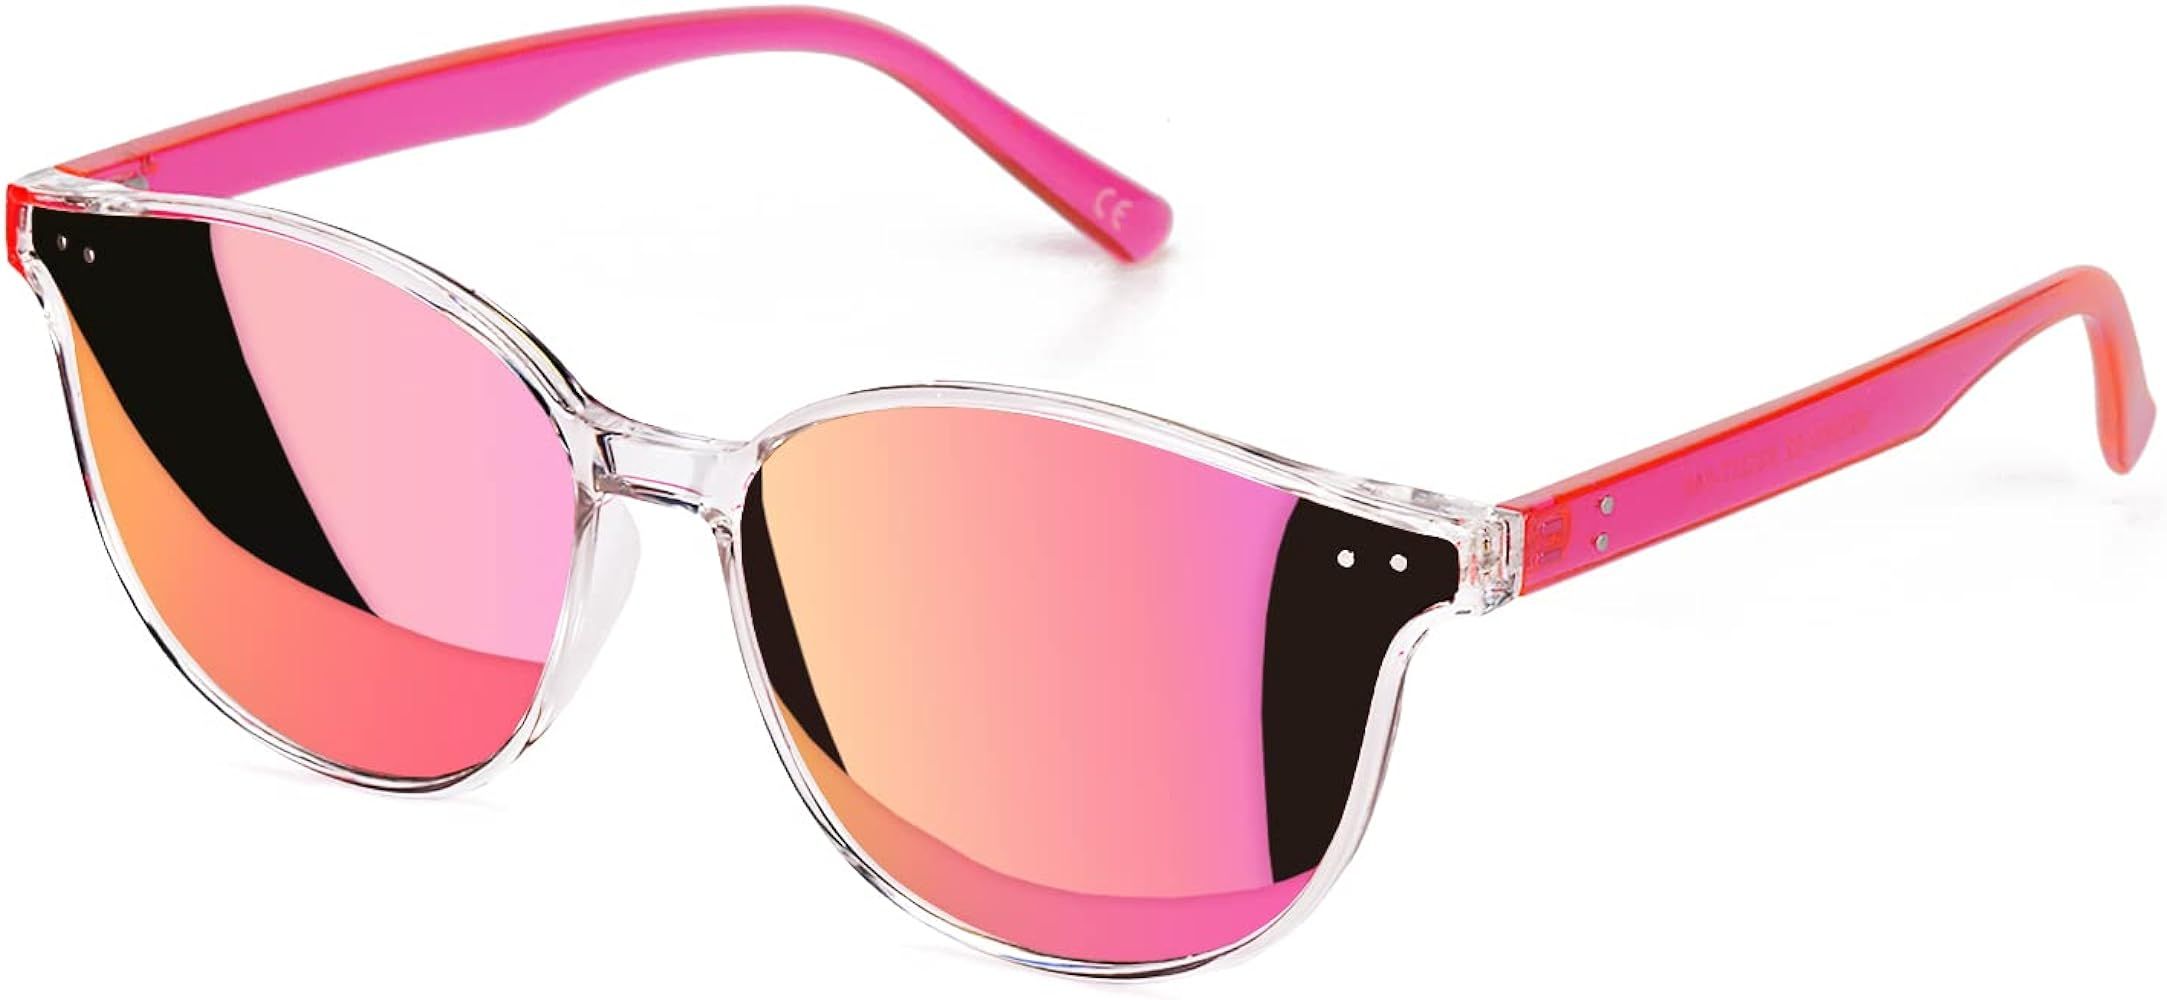 Sumato Sunglasses Womens, Cat Eye Pink Sunglasses for Women with Mirrored Trendy Lens UV400 Blocking | Amazon (US)